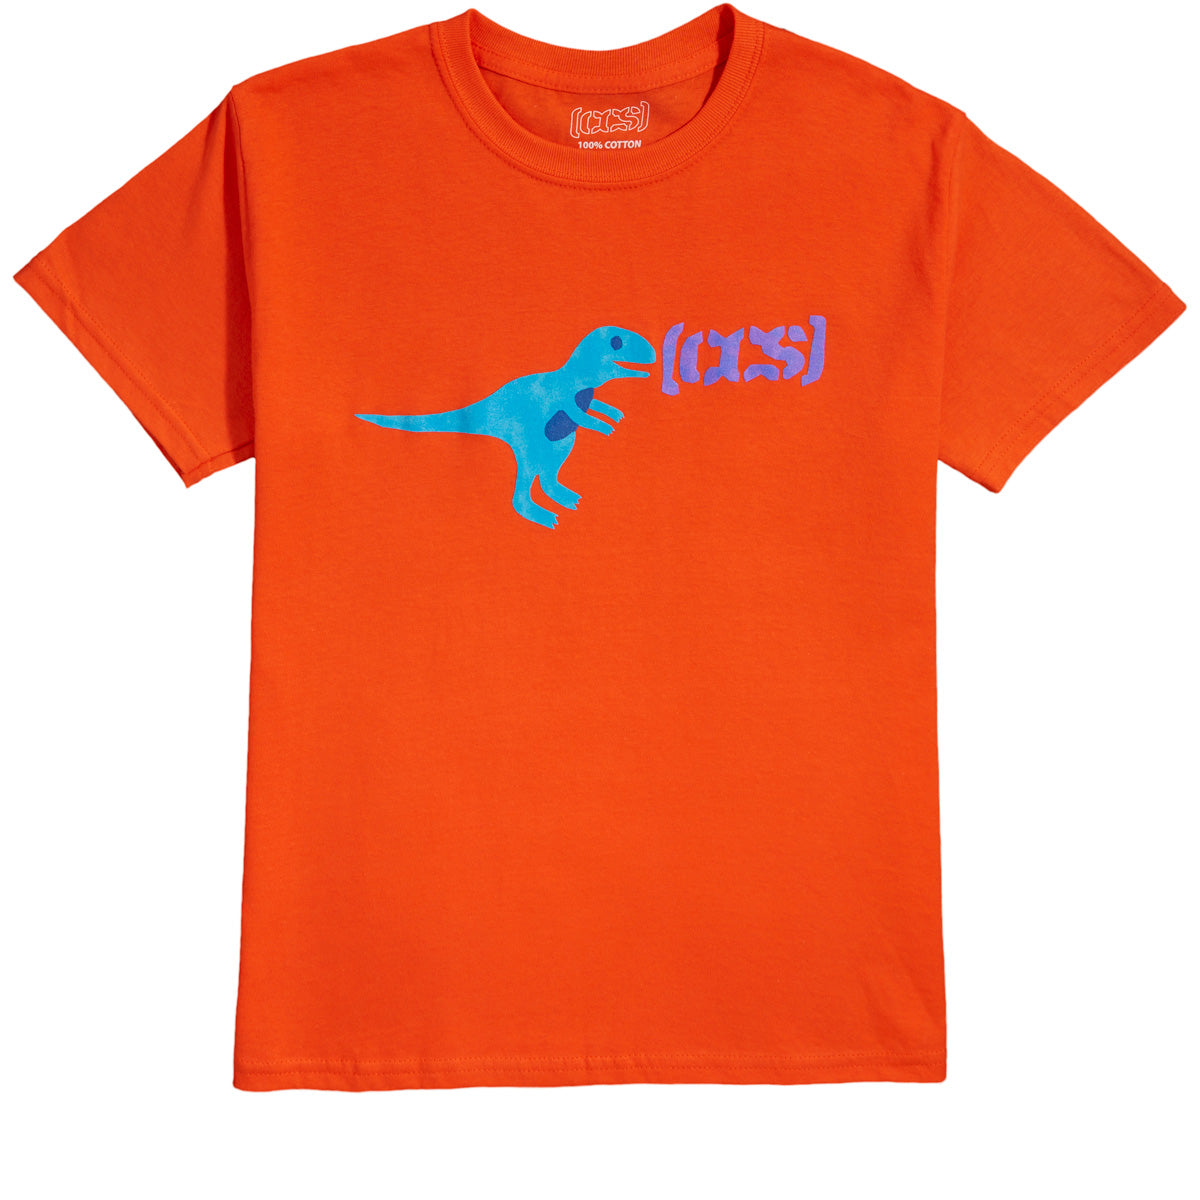 CCS Youth T-Rex T-Shirt - Orange image 1